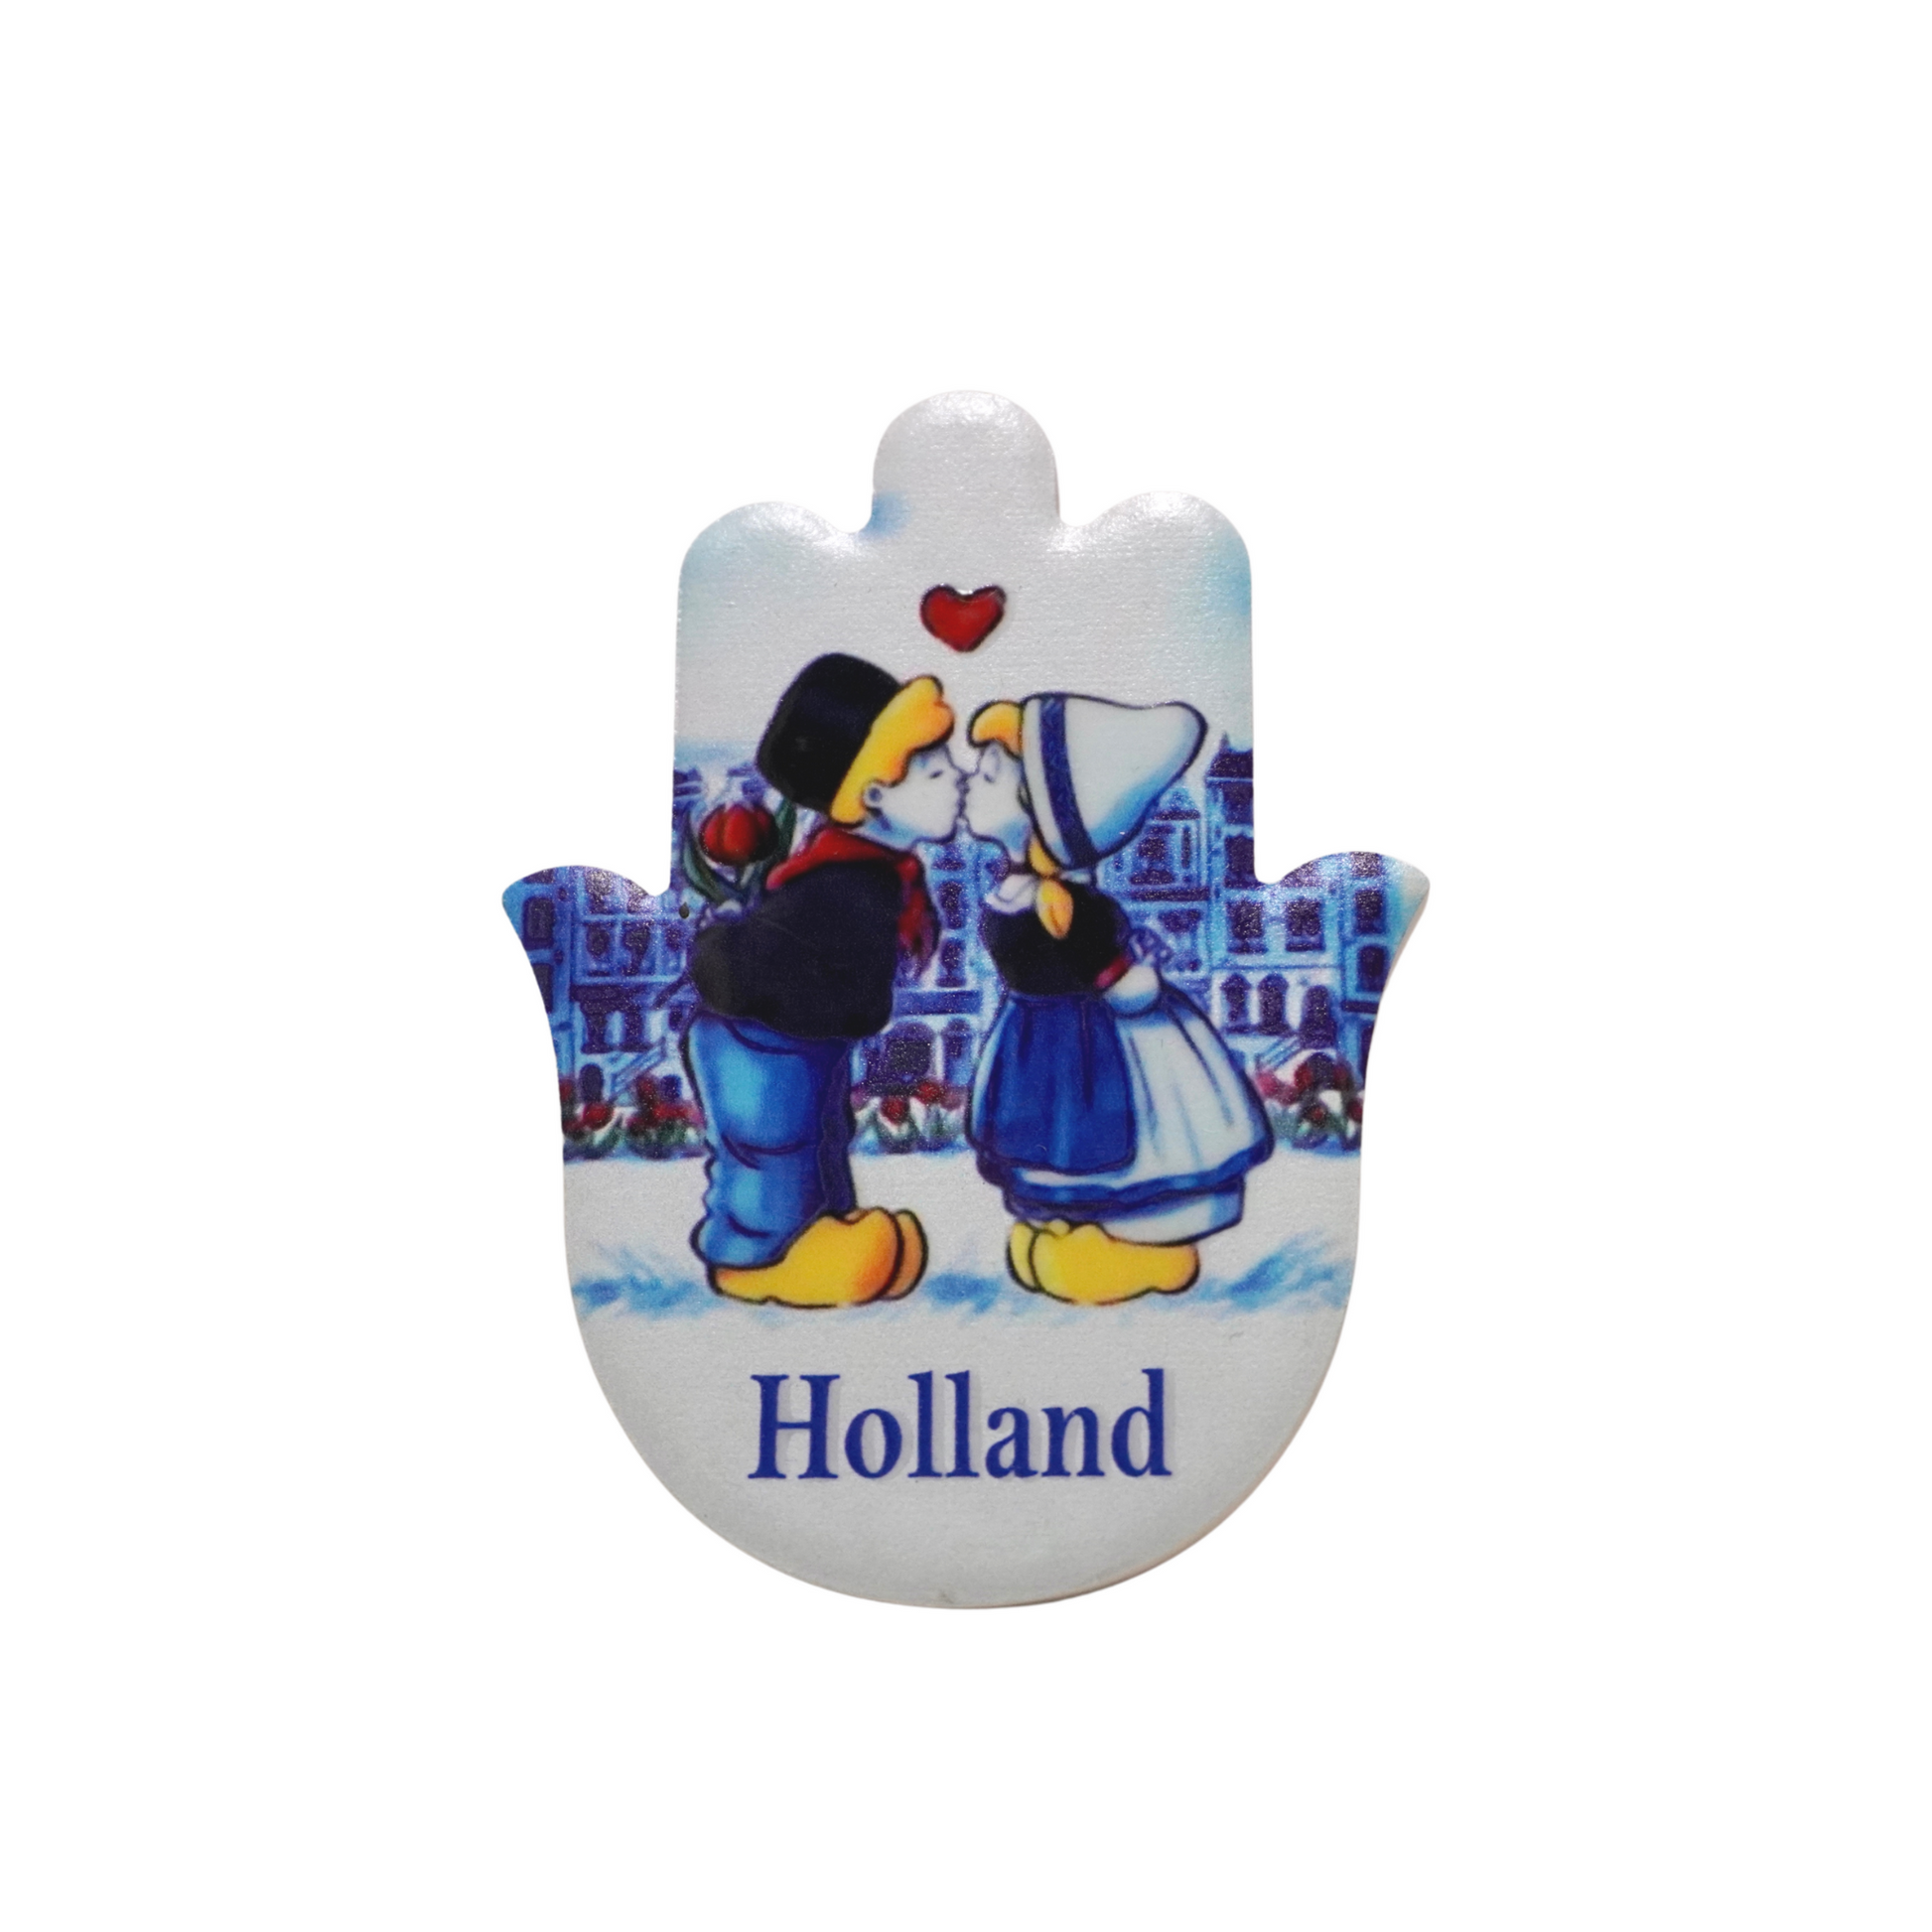 Deze Holland Magneten Set bevat 3 unieke koelkastmagneten. De magneten zijn ontworpen om te worden gebruikt als een mooie aandenken of souvenir van Volendam, Holland. De magneten zijn stevig en zullen niet snel breken of vervormen. Ze zijn ook makkelijk te gebruiken en te verwijderen.